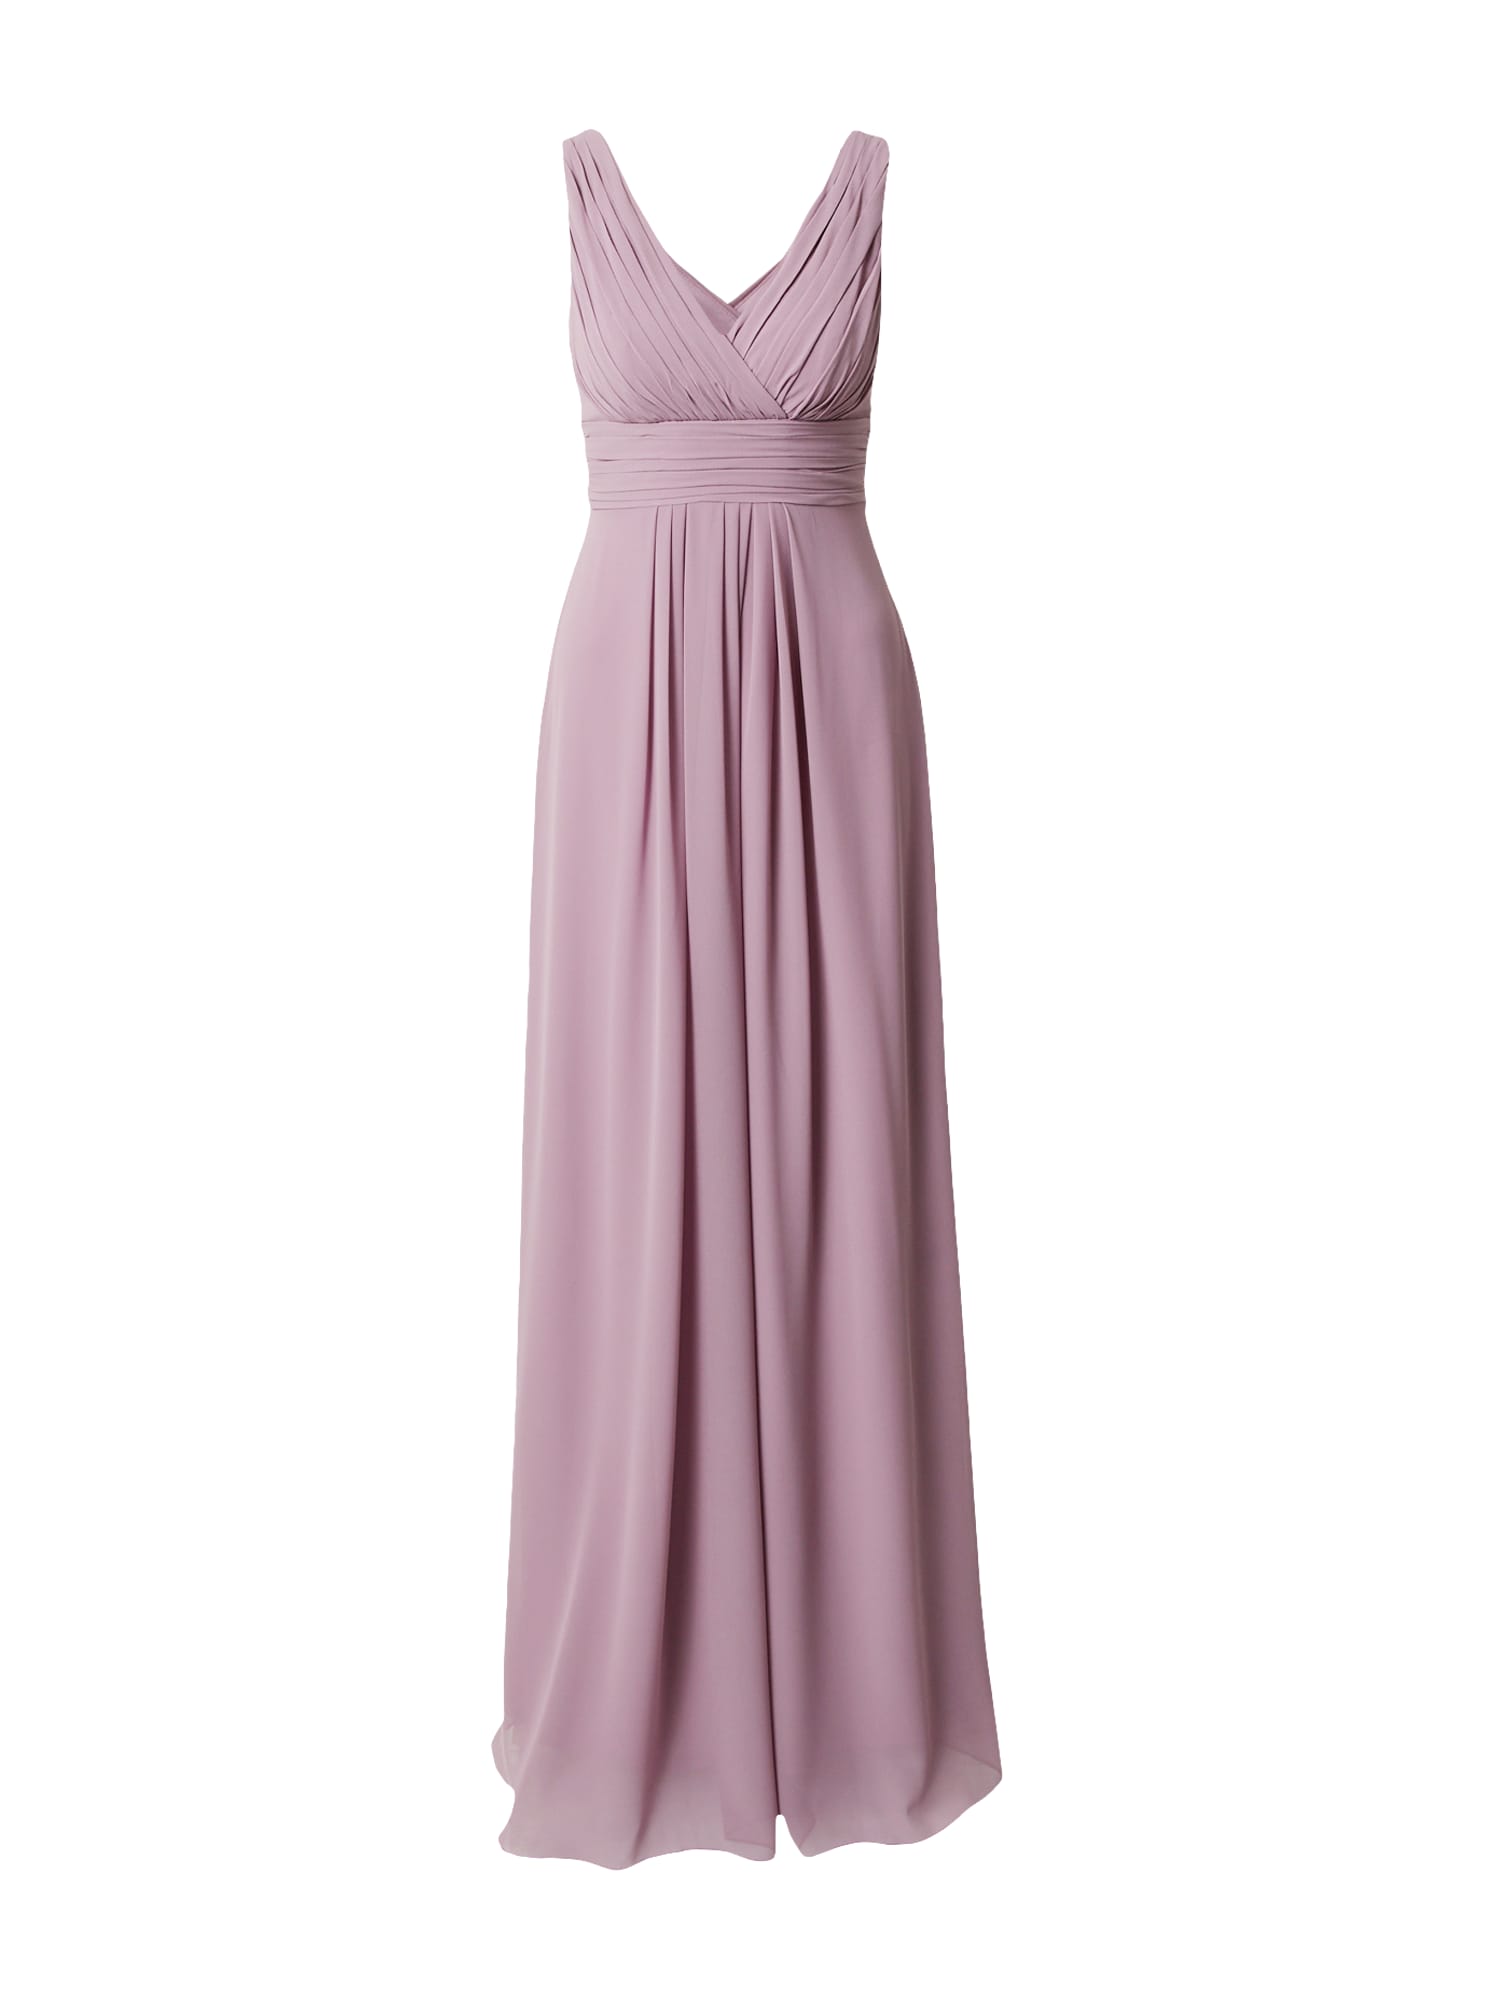 STAR NIGHT Vakarinė suknelė rausvai violetinė spalva